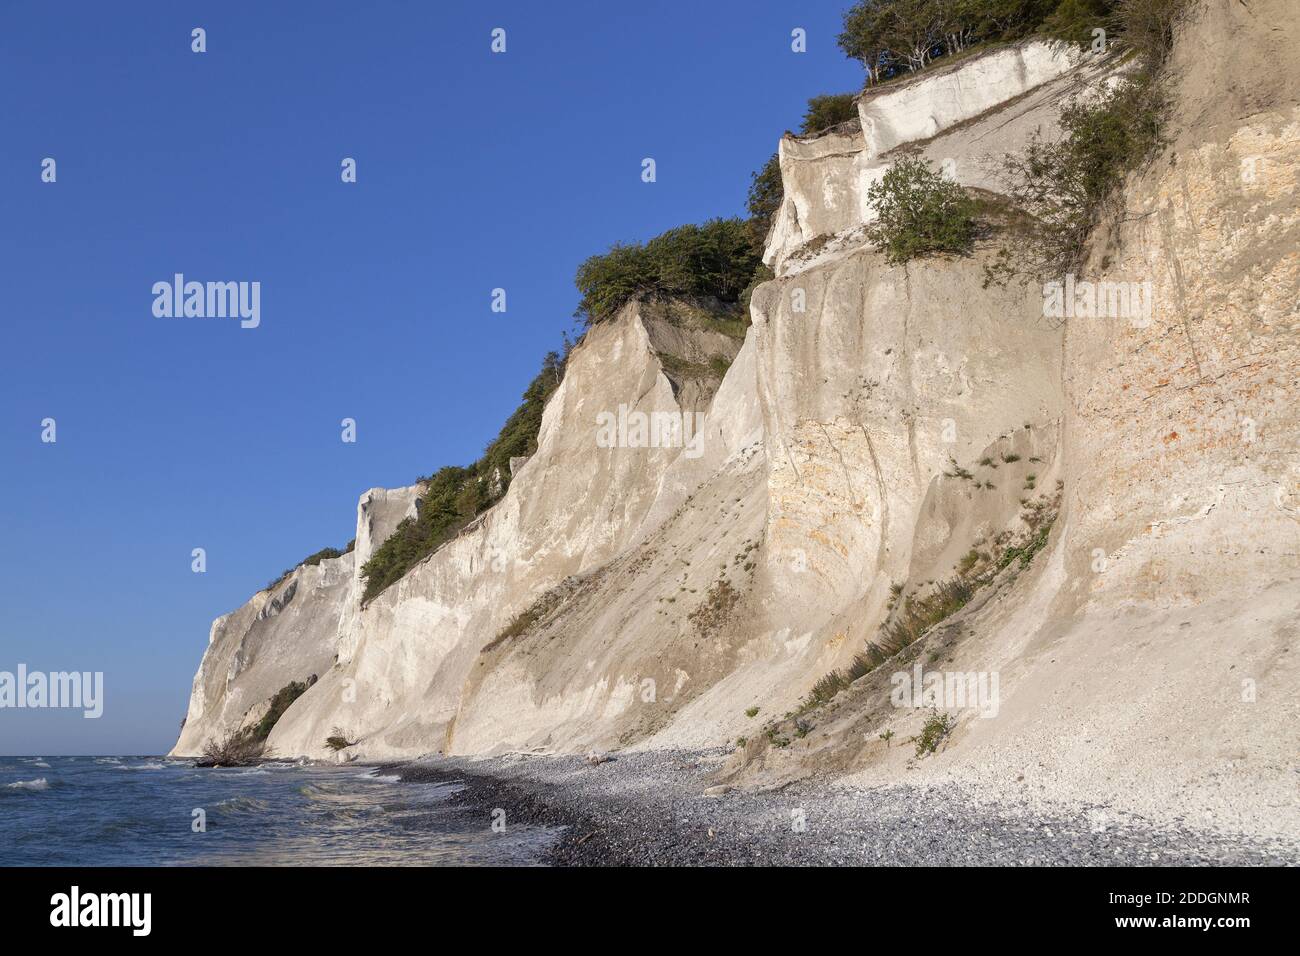 Géographie / Voyage, Danemark, Zélande, isle mon, falaise de craie près des falaises de mon, Mons Klint sur l'île, droits-supplémentaires-autorisation-Info-non-disponible Banque D'Images